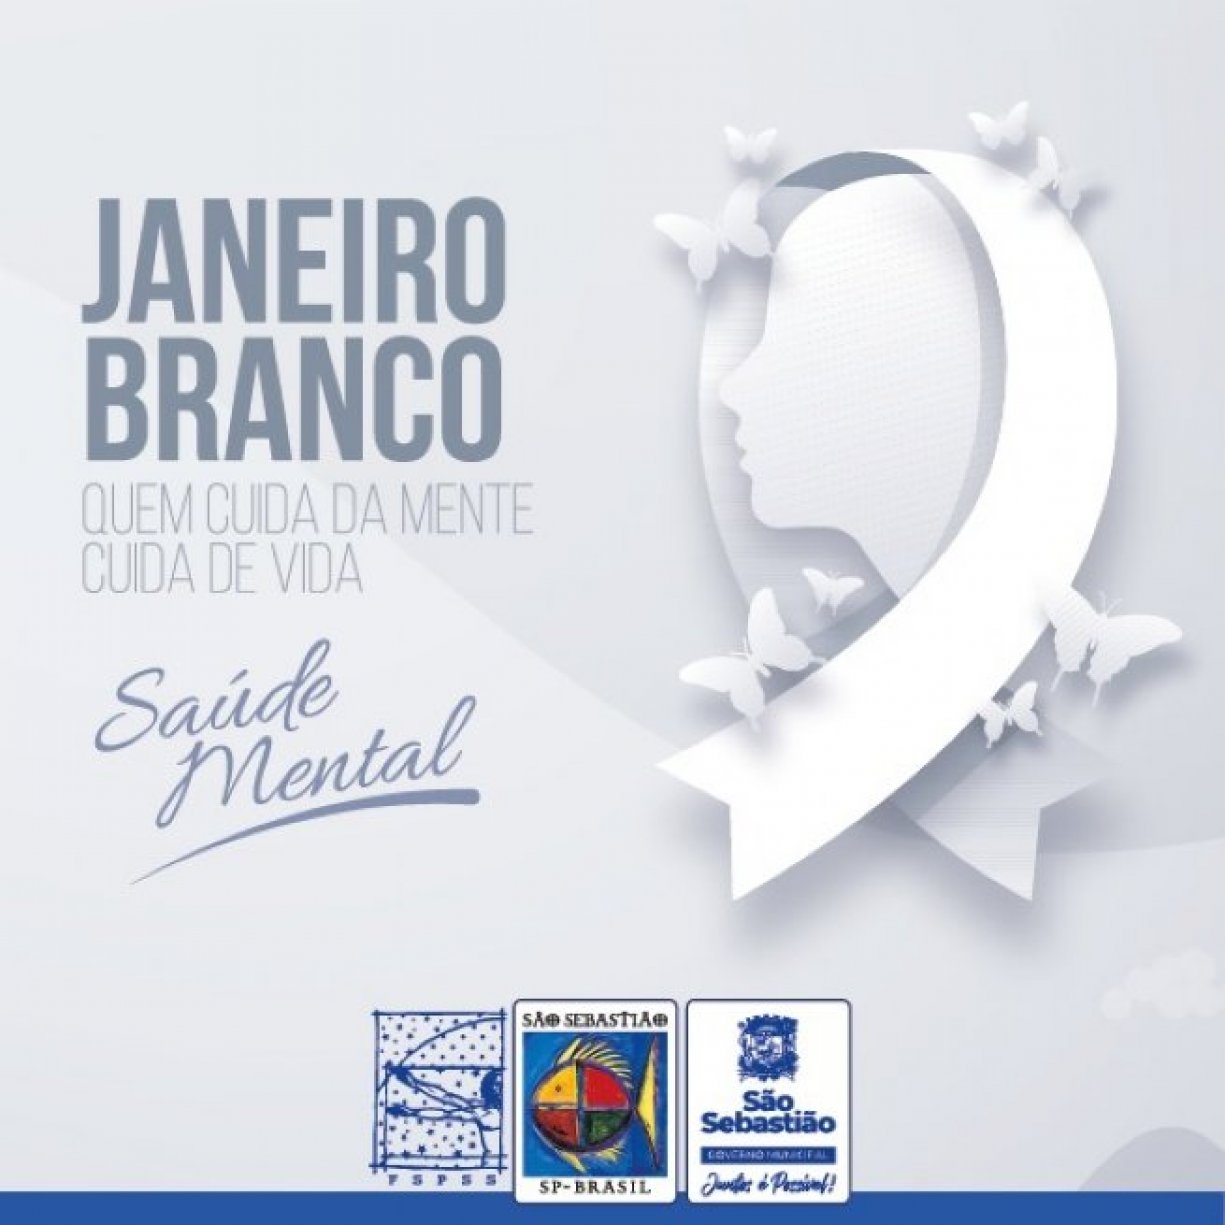 Prefeitura de São Sebastião adere à Campanha Janeiro Branco e realiza ações em prol da saúde mental